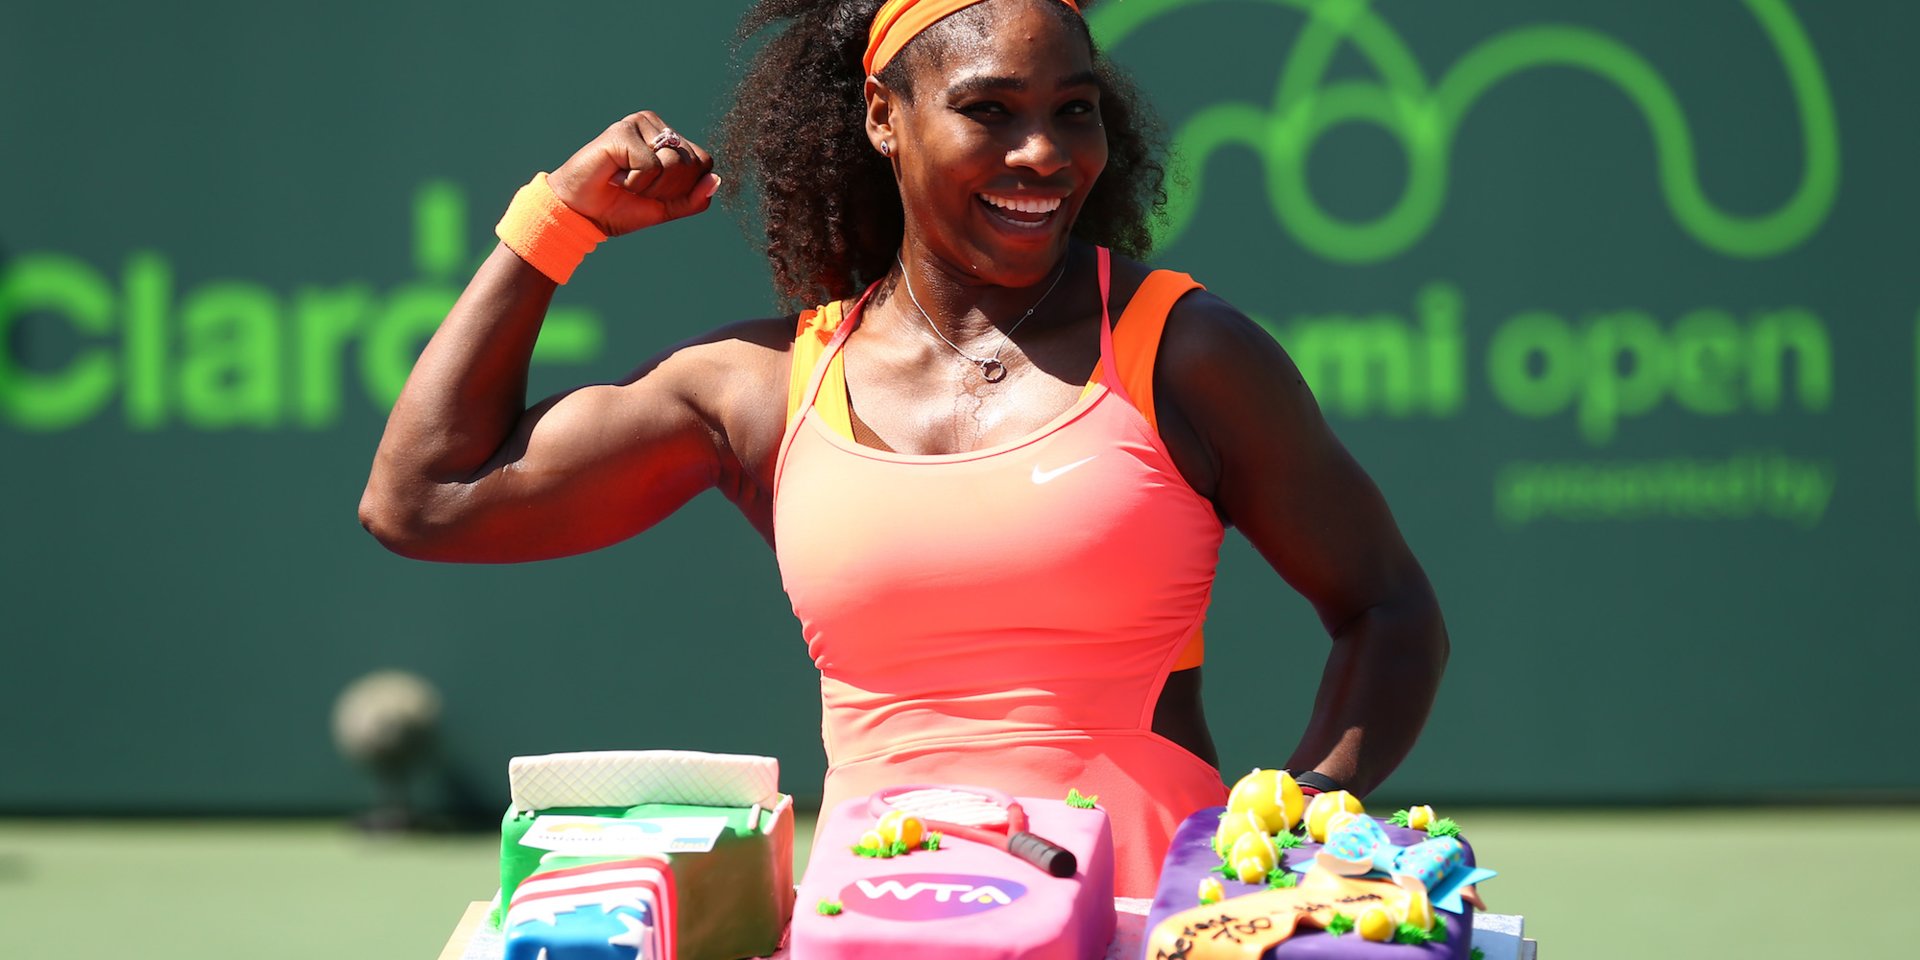 Ha tömegnövelésre hajtasz, érdemes Serena Williams kedvenc ételeit csekkolnod ...